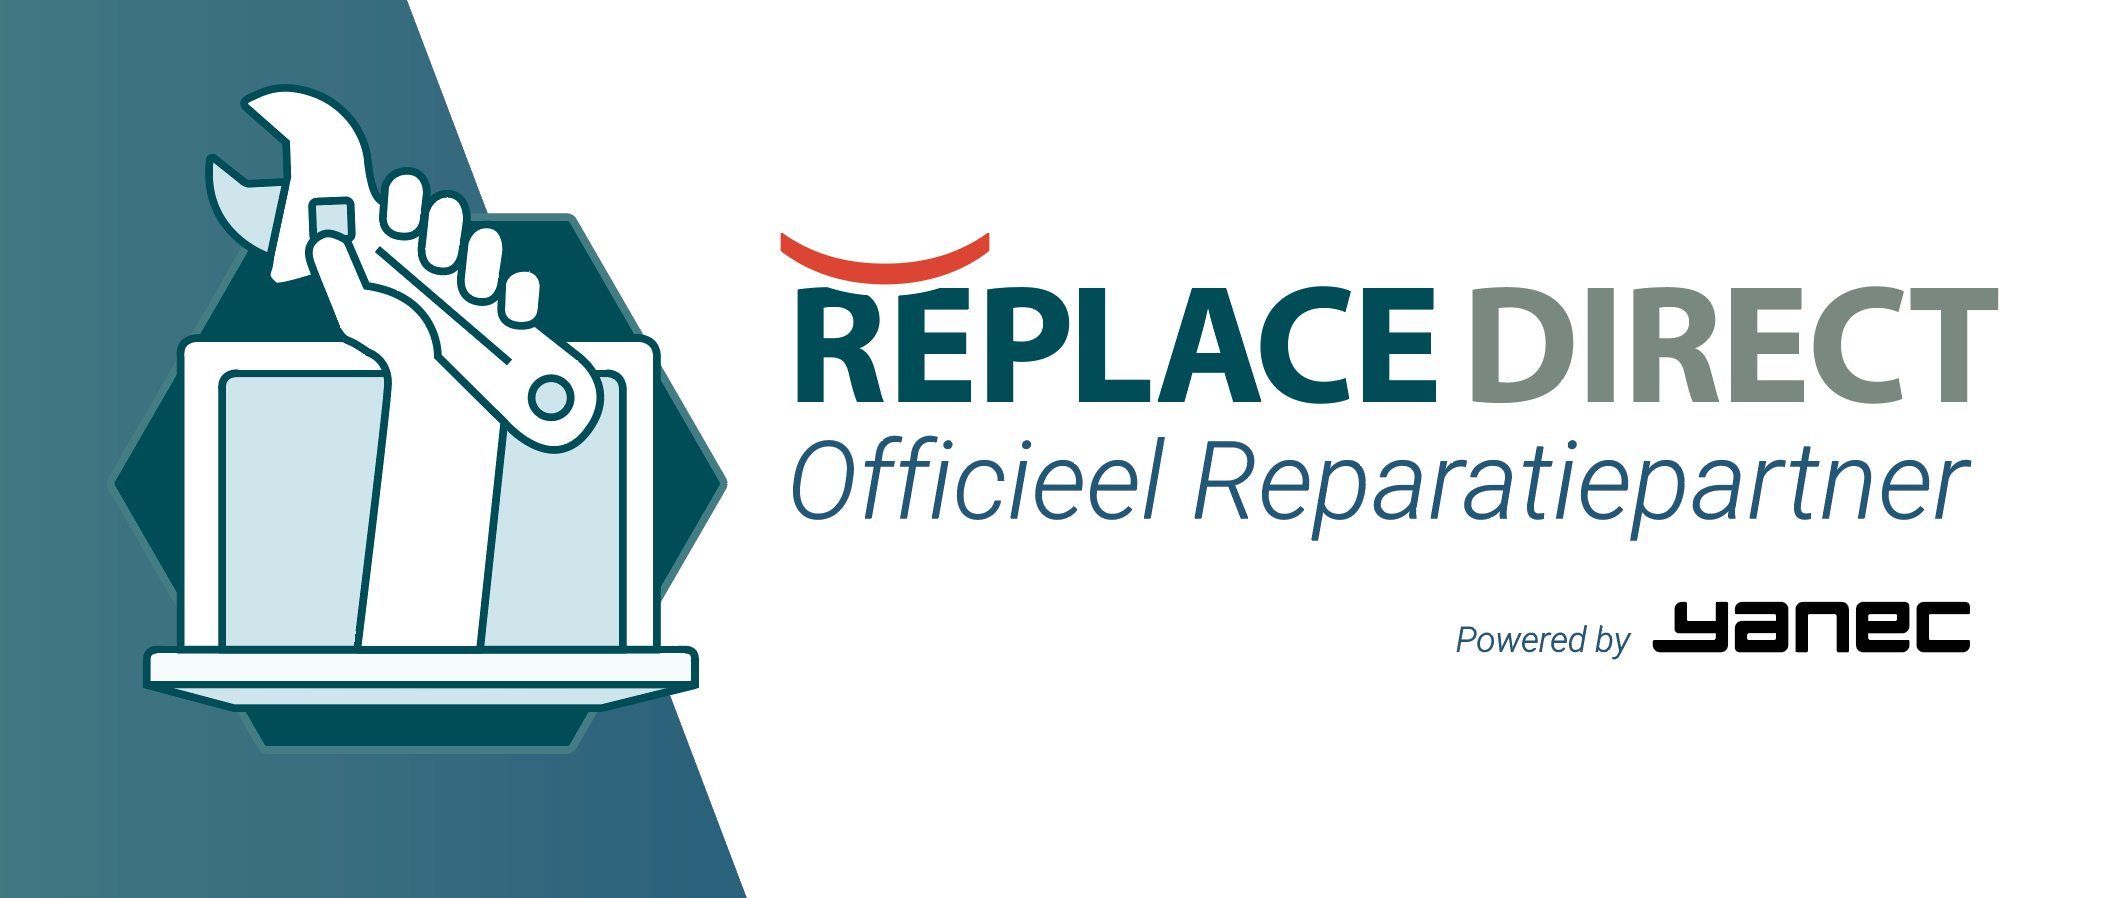 Replace Direct Officieel Reparatiepartner (powered by Yanec)